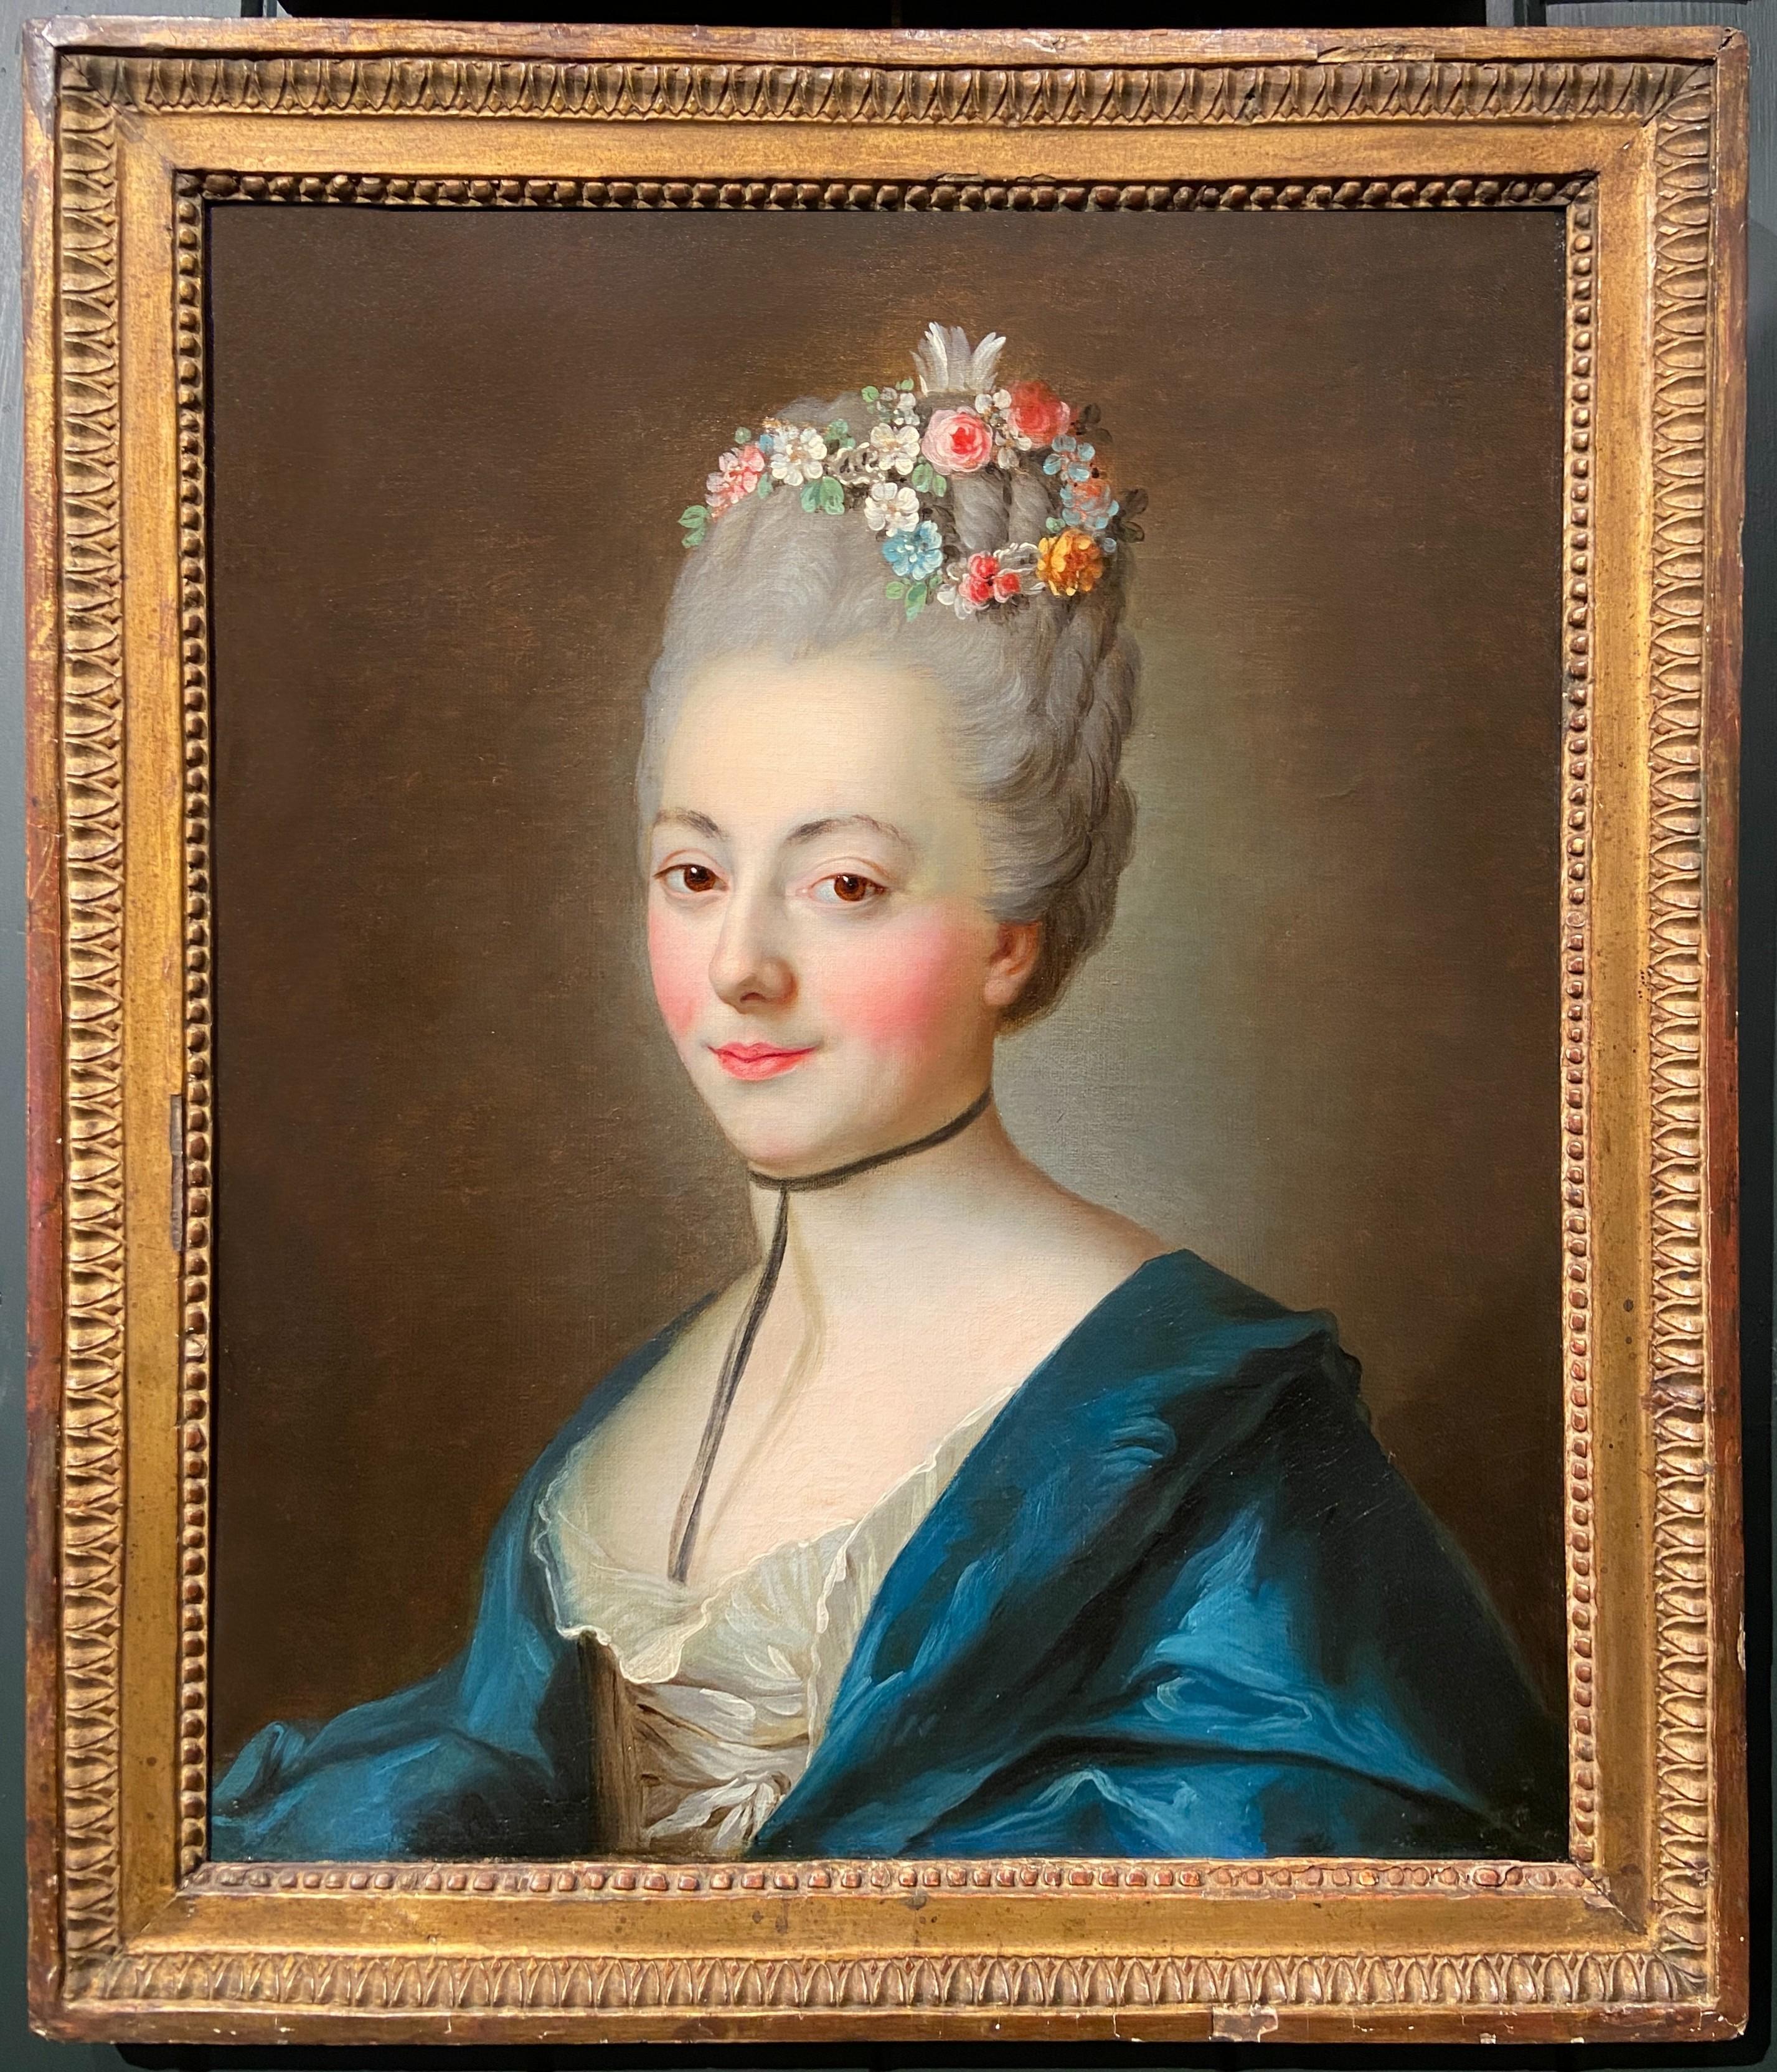 Portrait d'une femme avec ses cheveux ornés de fleurs, 18ème siècle français - Painting de Alexander Roslin